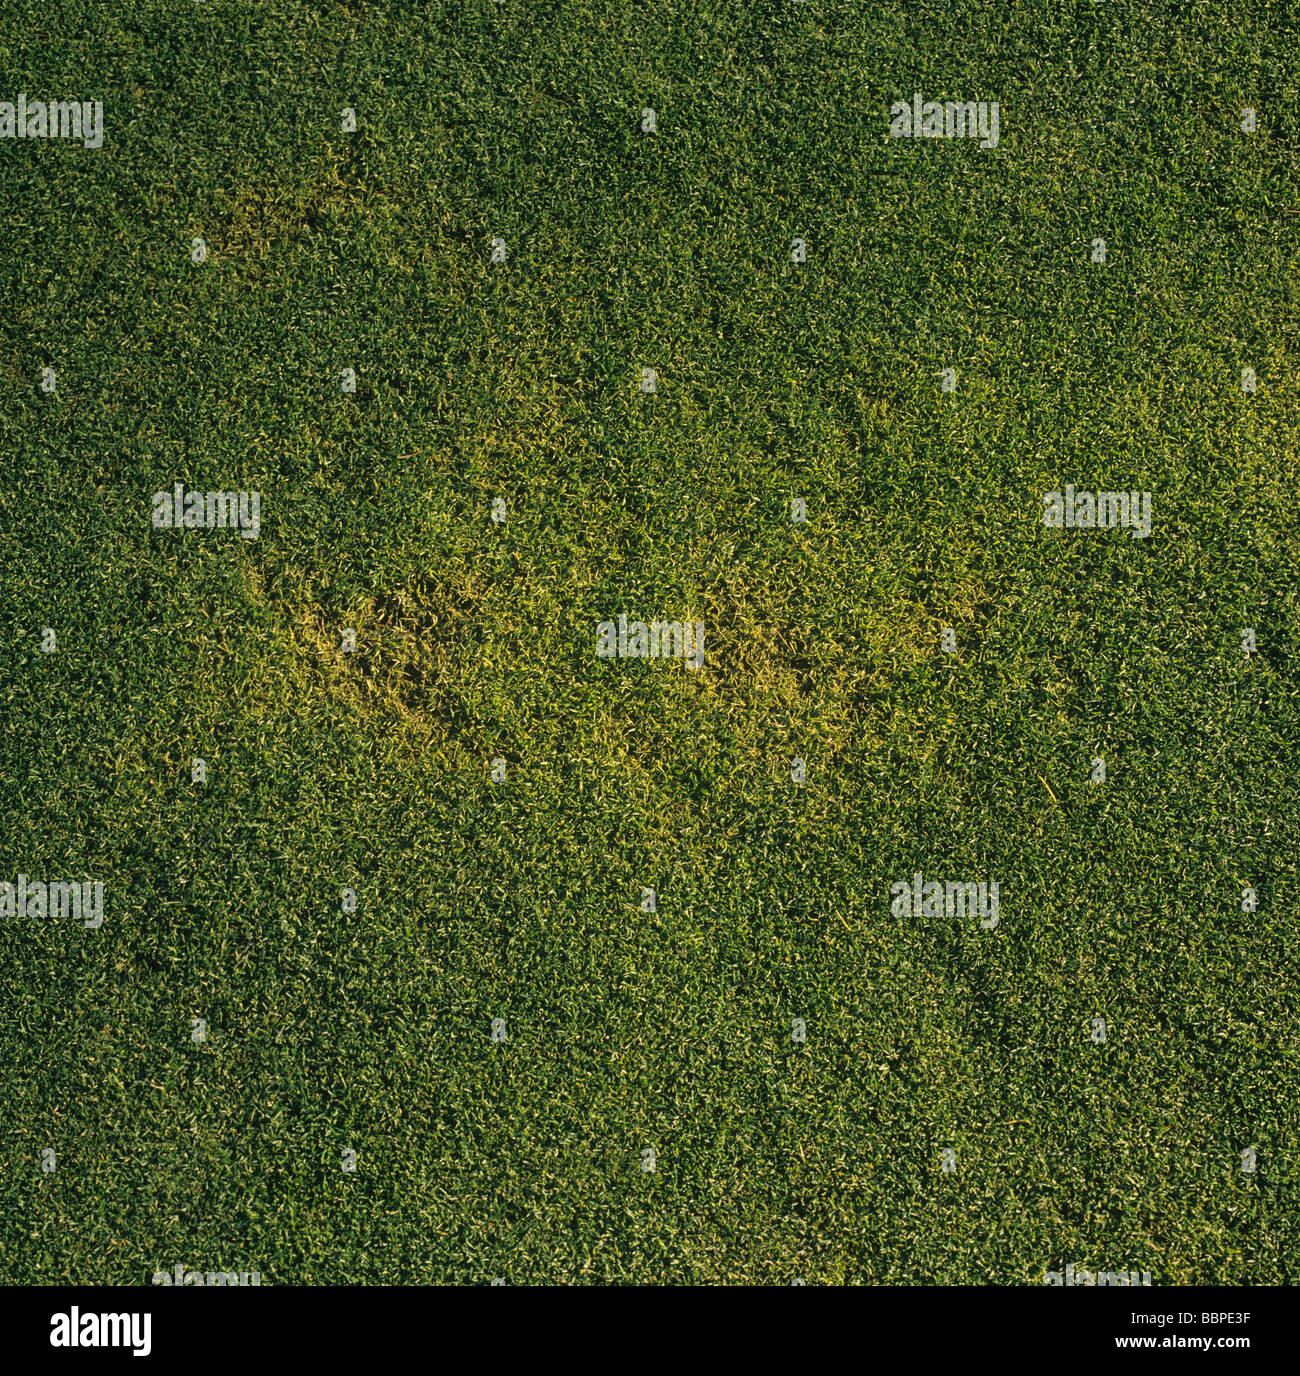 Tache jaune Rhizoctonia cerealis dommages à l'herbe fine dans un vert de golf Banque D'Images